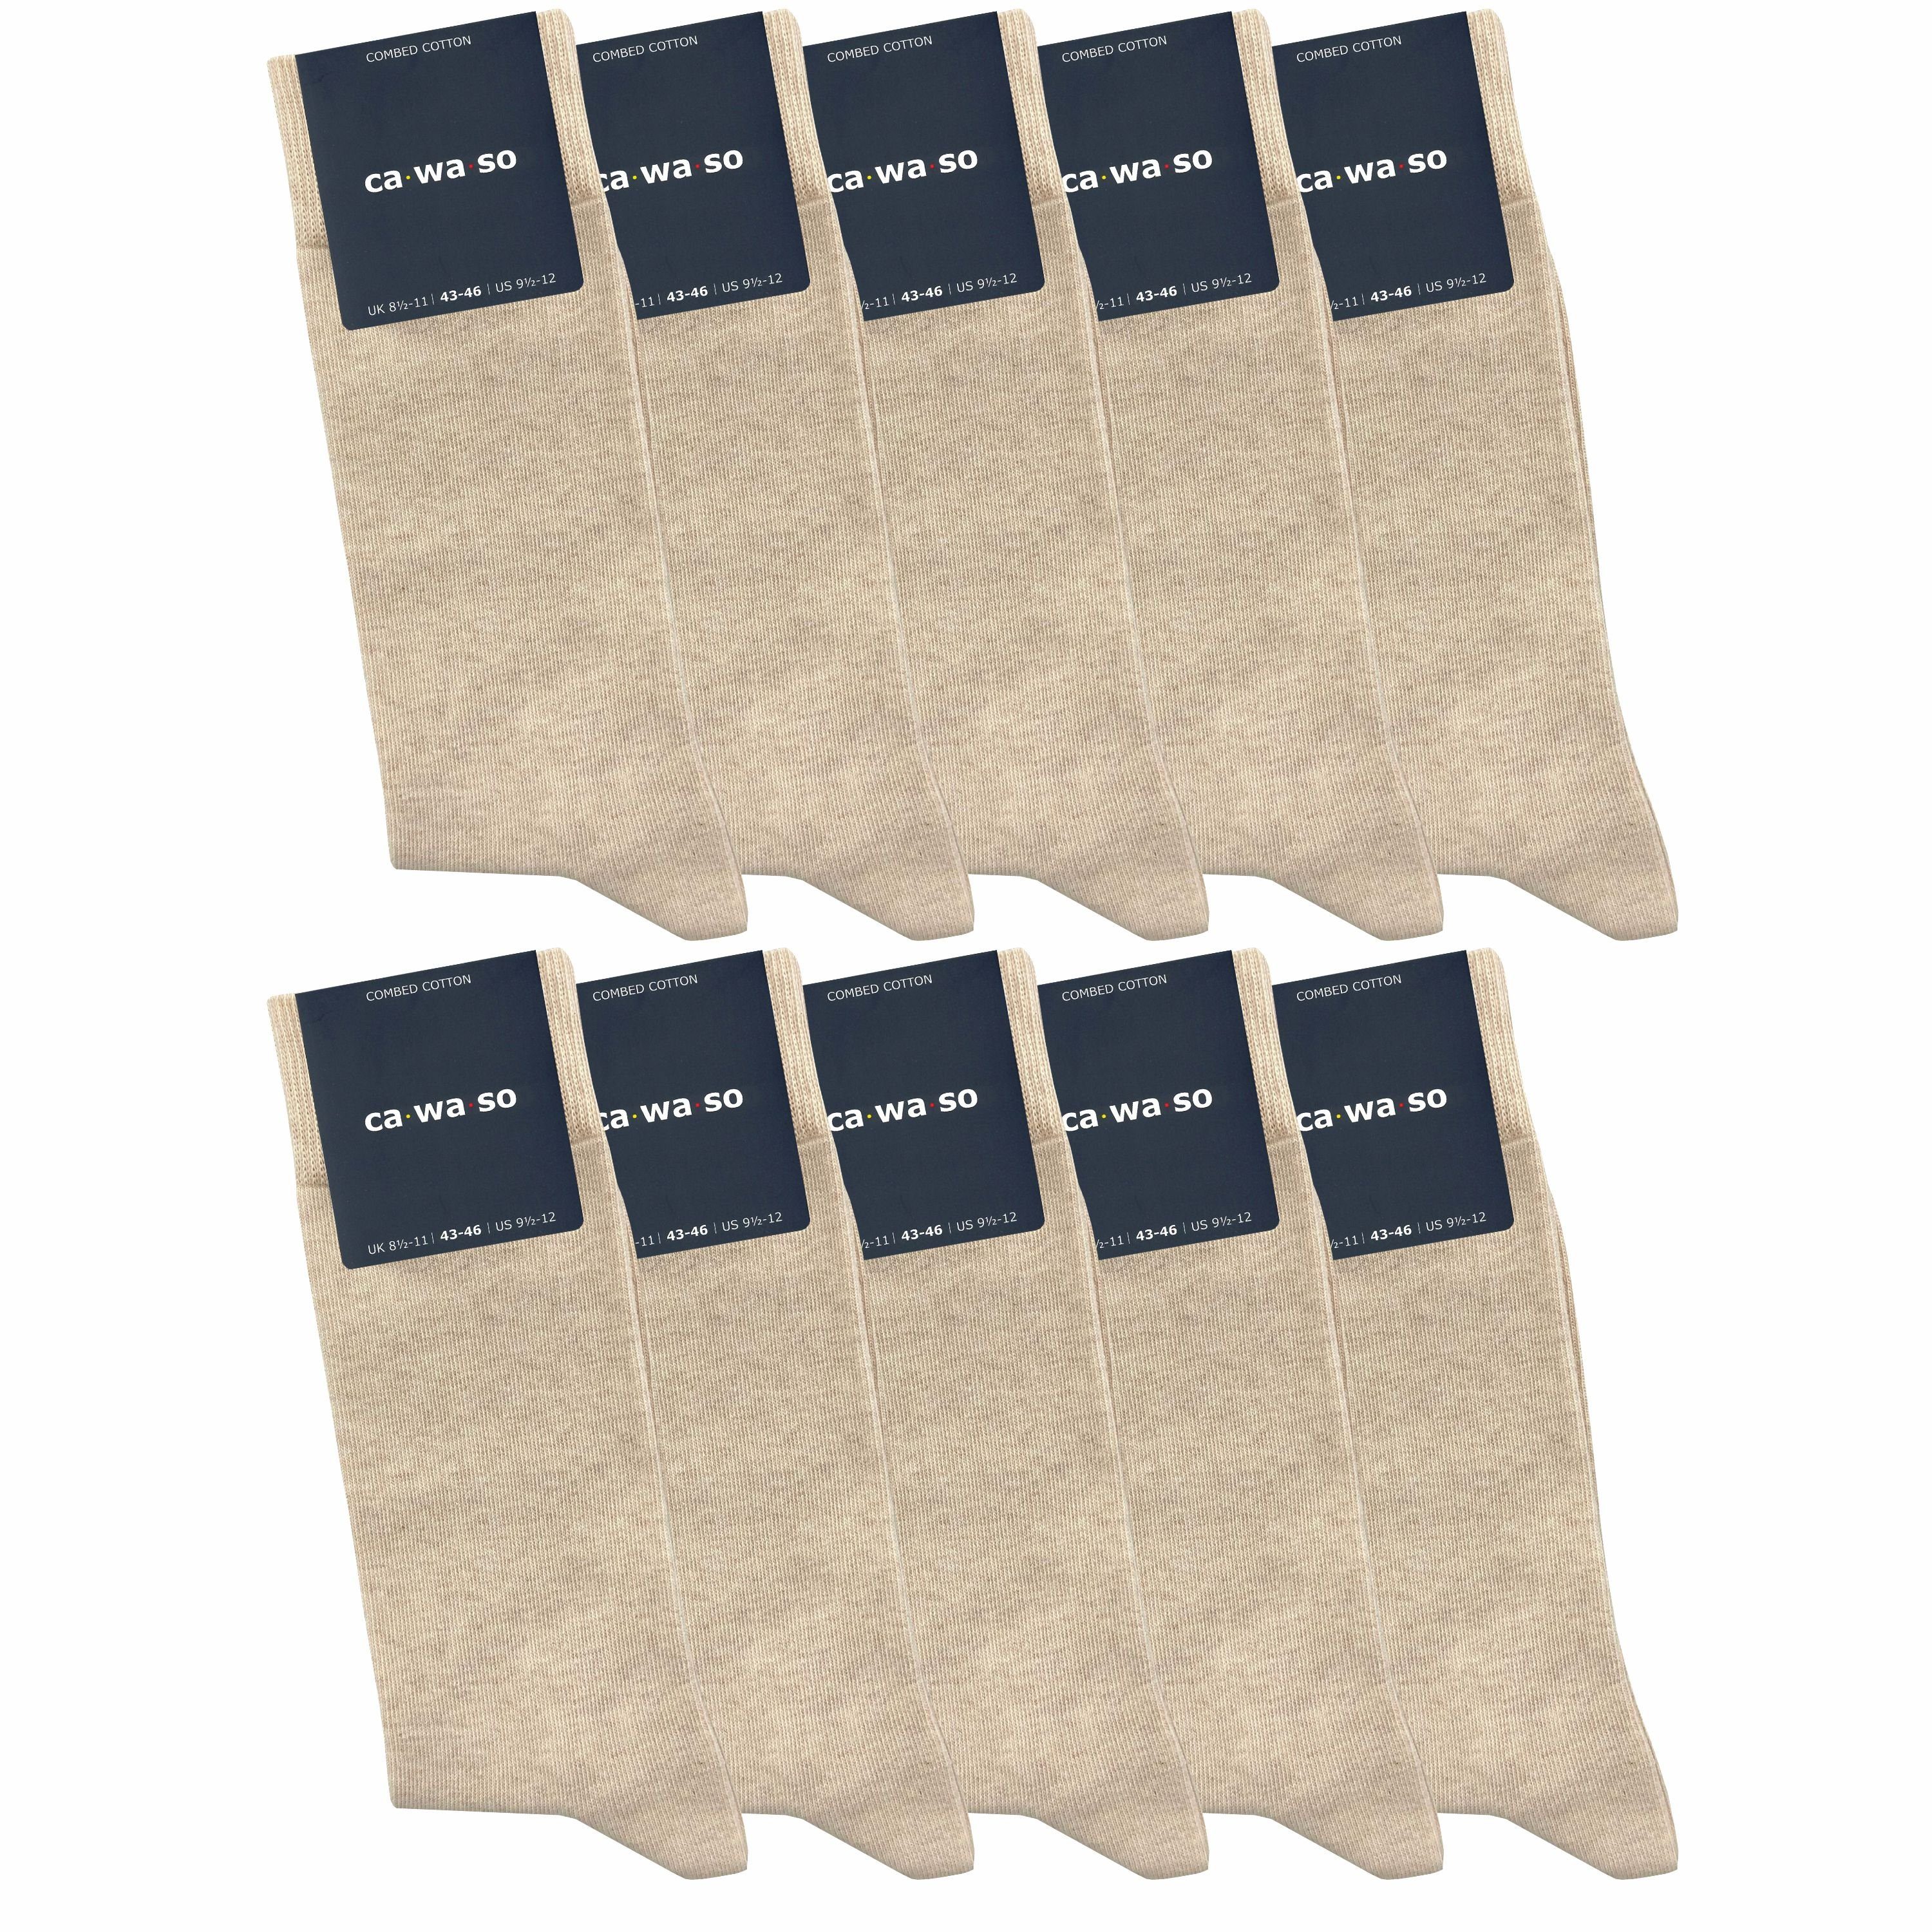 ca·wa·so Socken für Damen & Herren - bequem & weich - aus doppelt gekämmter Baumwolle (10 Paar) Socken in schwarz, bunt, grau, blau und weiteren Farben beige